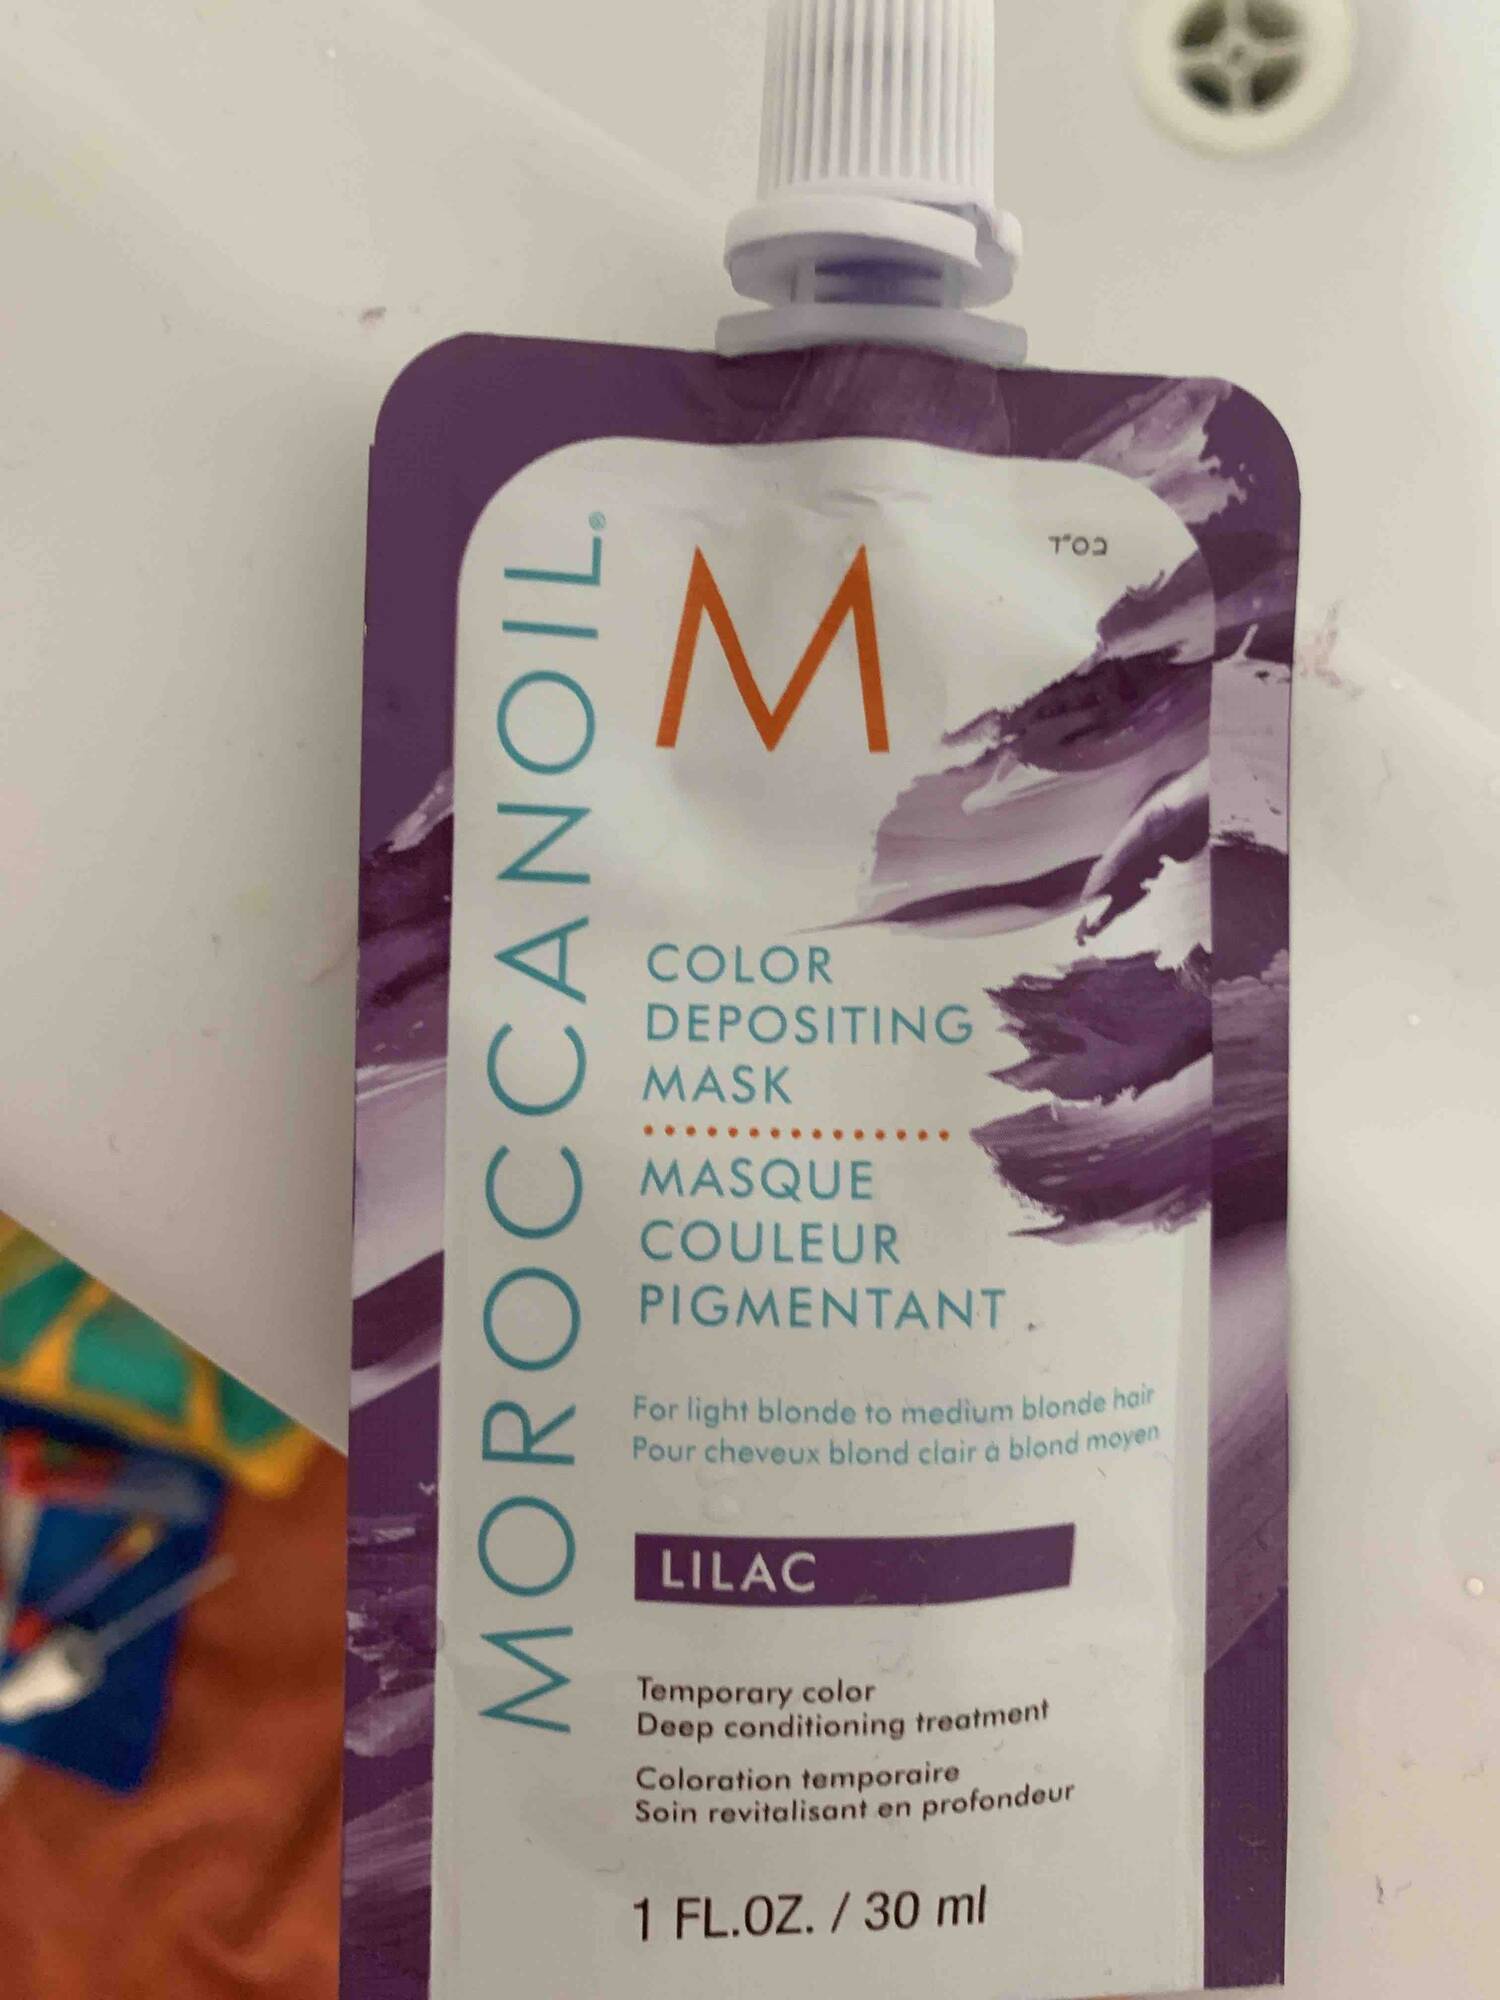 MOROCCANOIL - Lilac - Masque couleur pigmentant